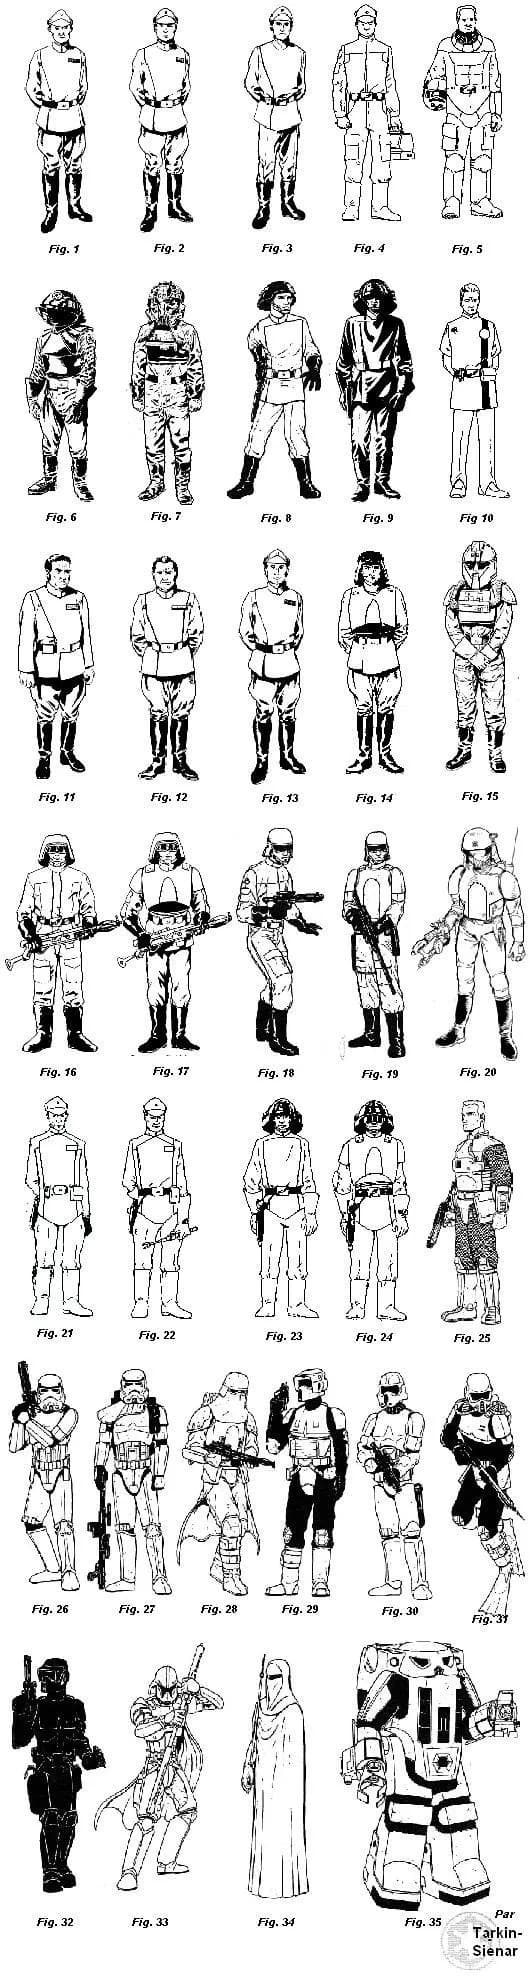 Planche II : Types d'uniformes et armures